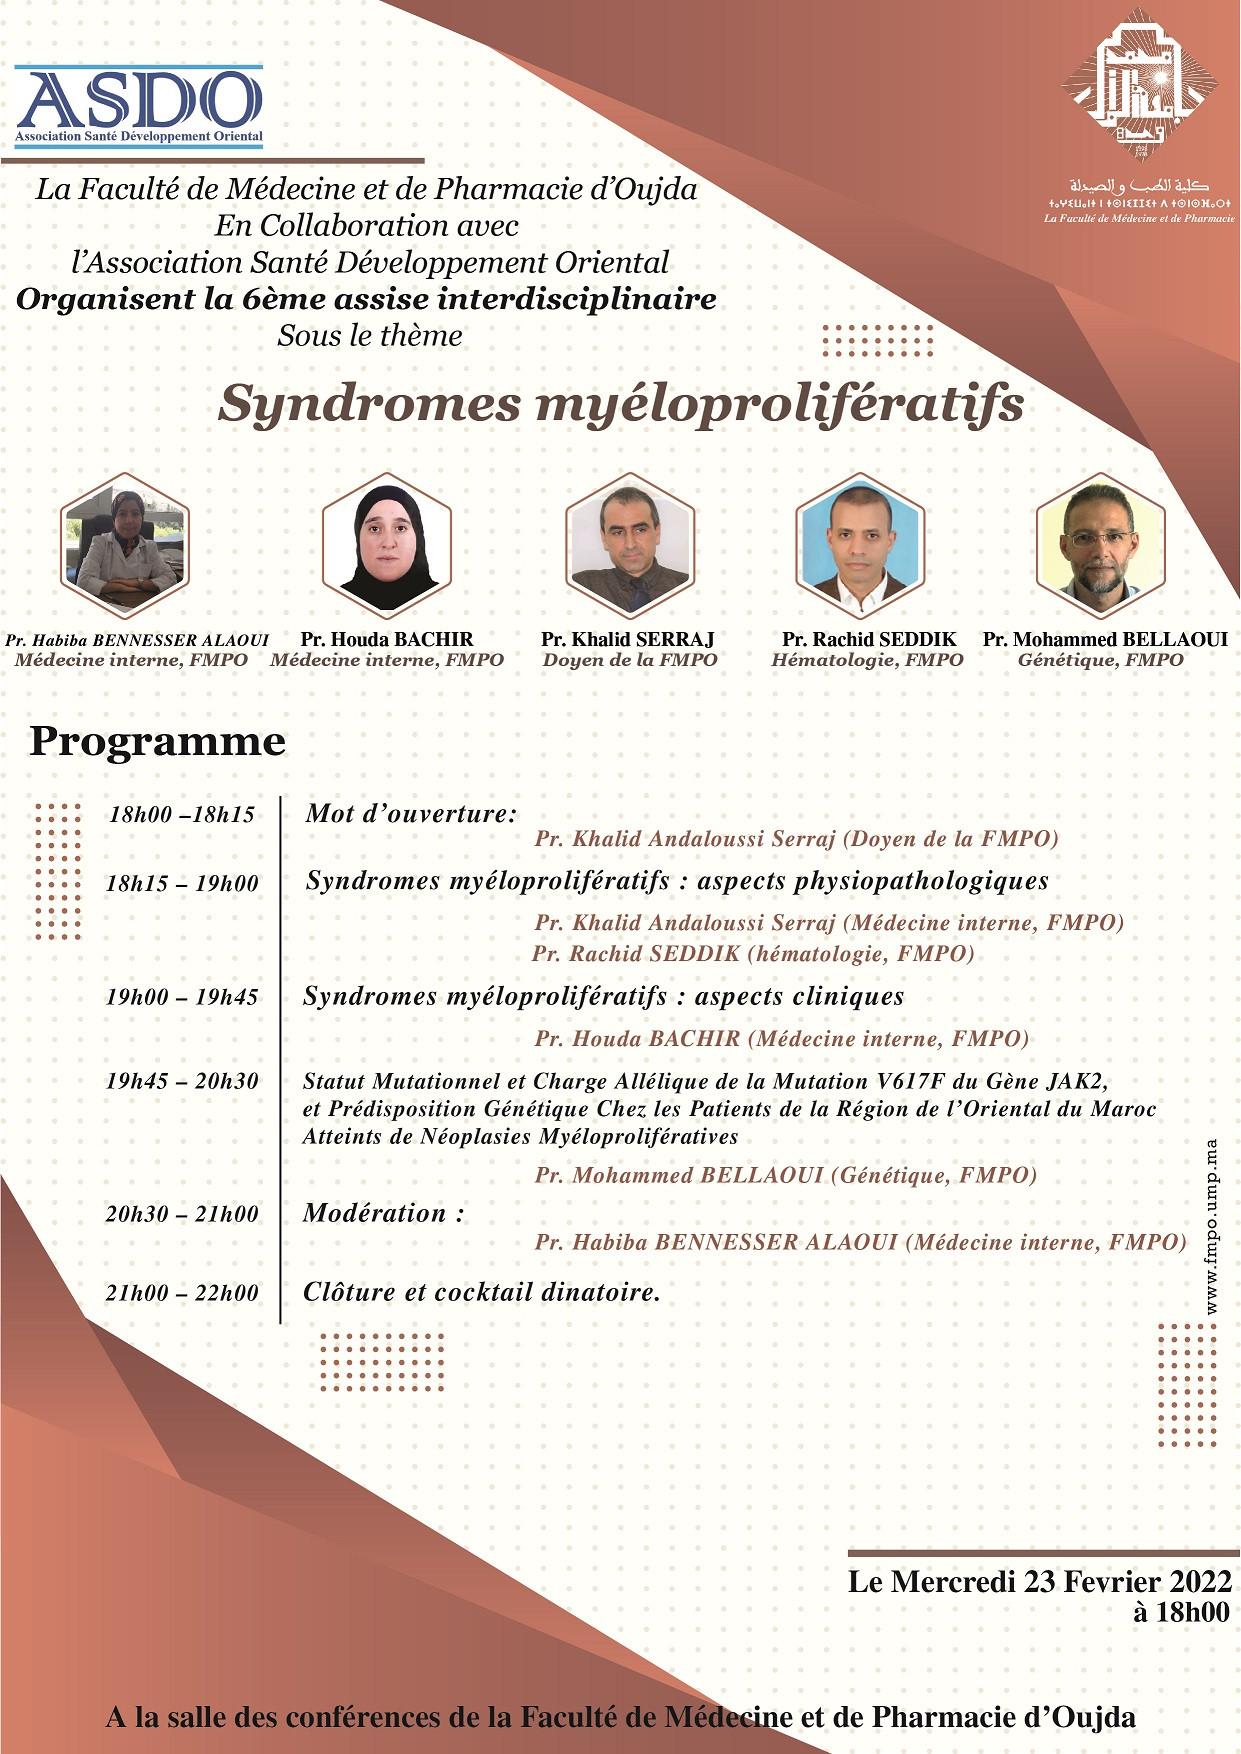 6ème assise interdisciplinaire sous le thème : Syndromes myéloprolifératifs